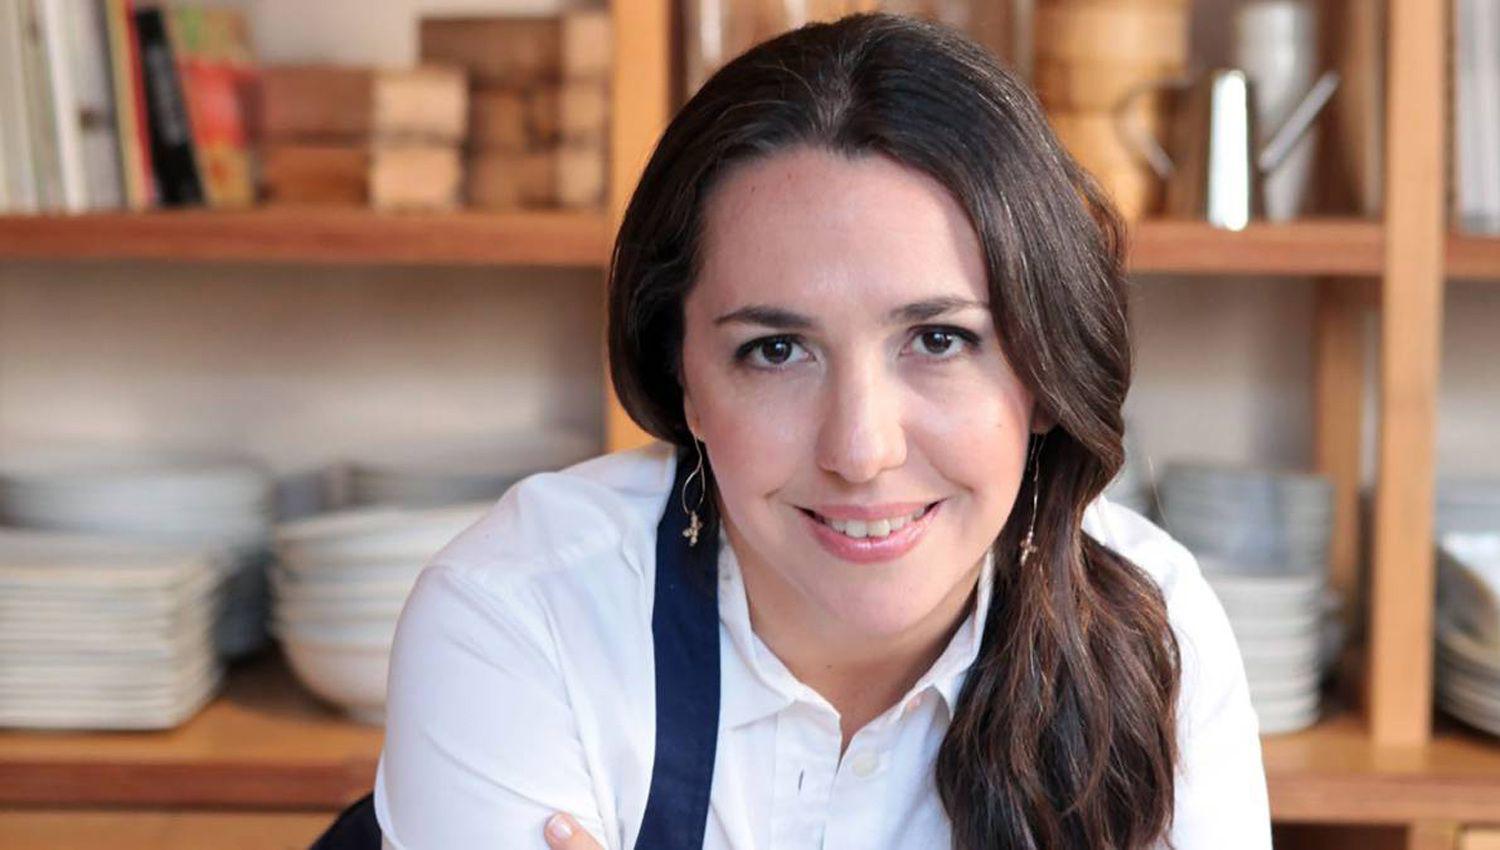 Nombraron a Narda Lepes Mejor Chef Femenina de Ameacuterica Latina 2020